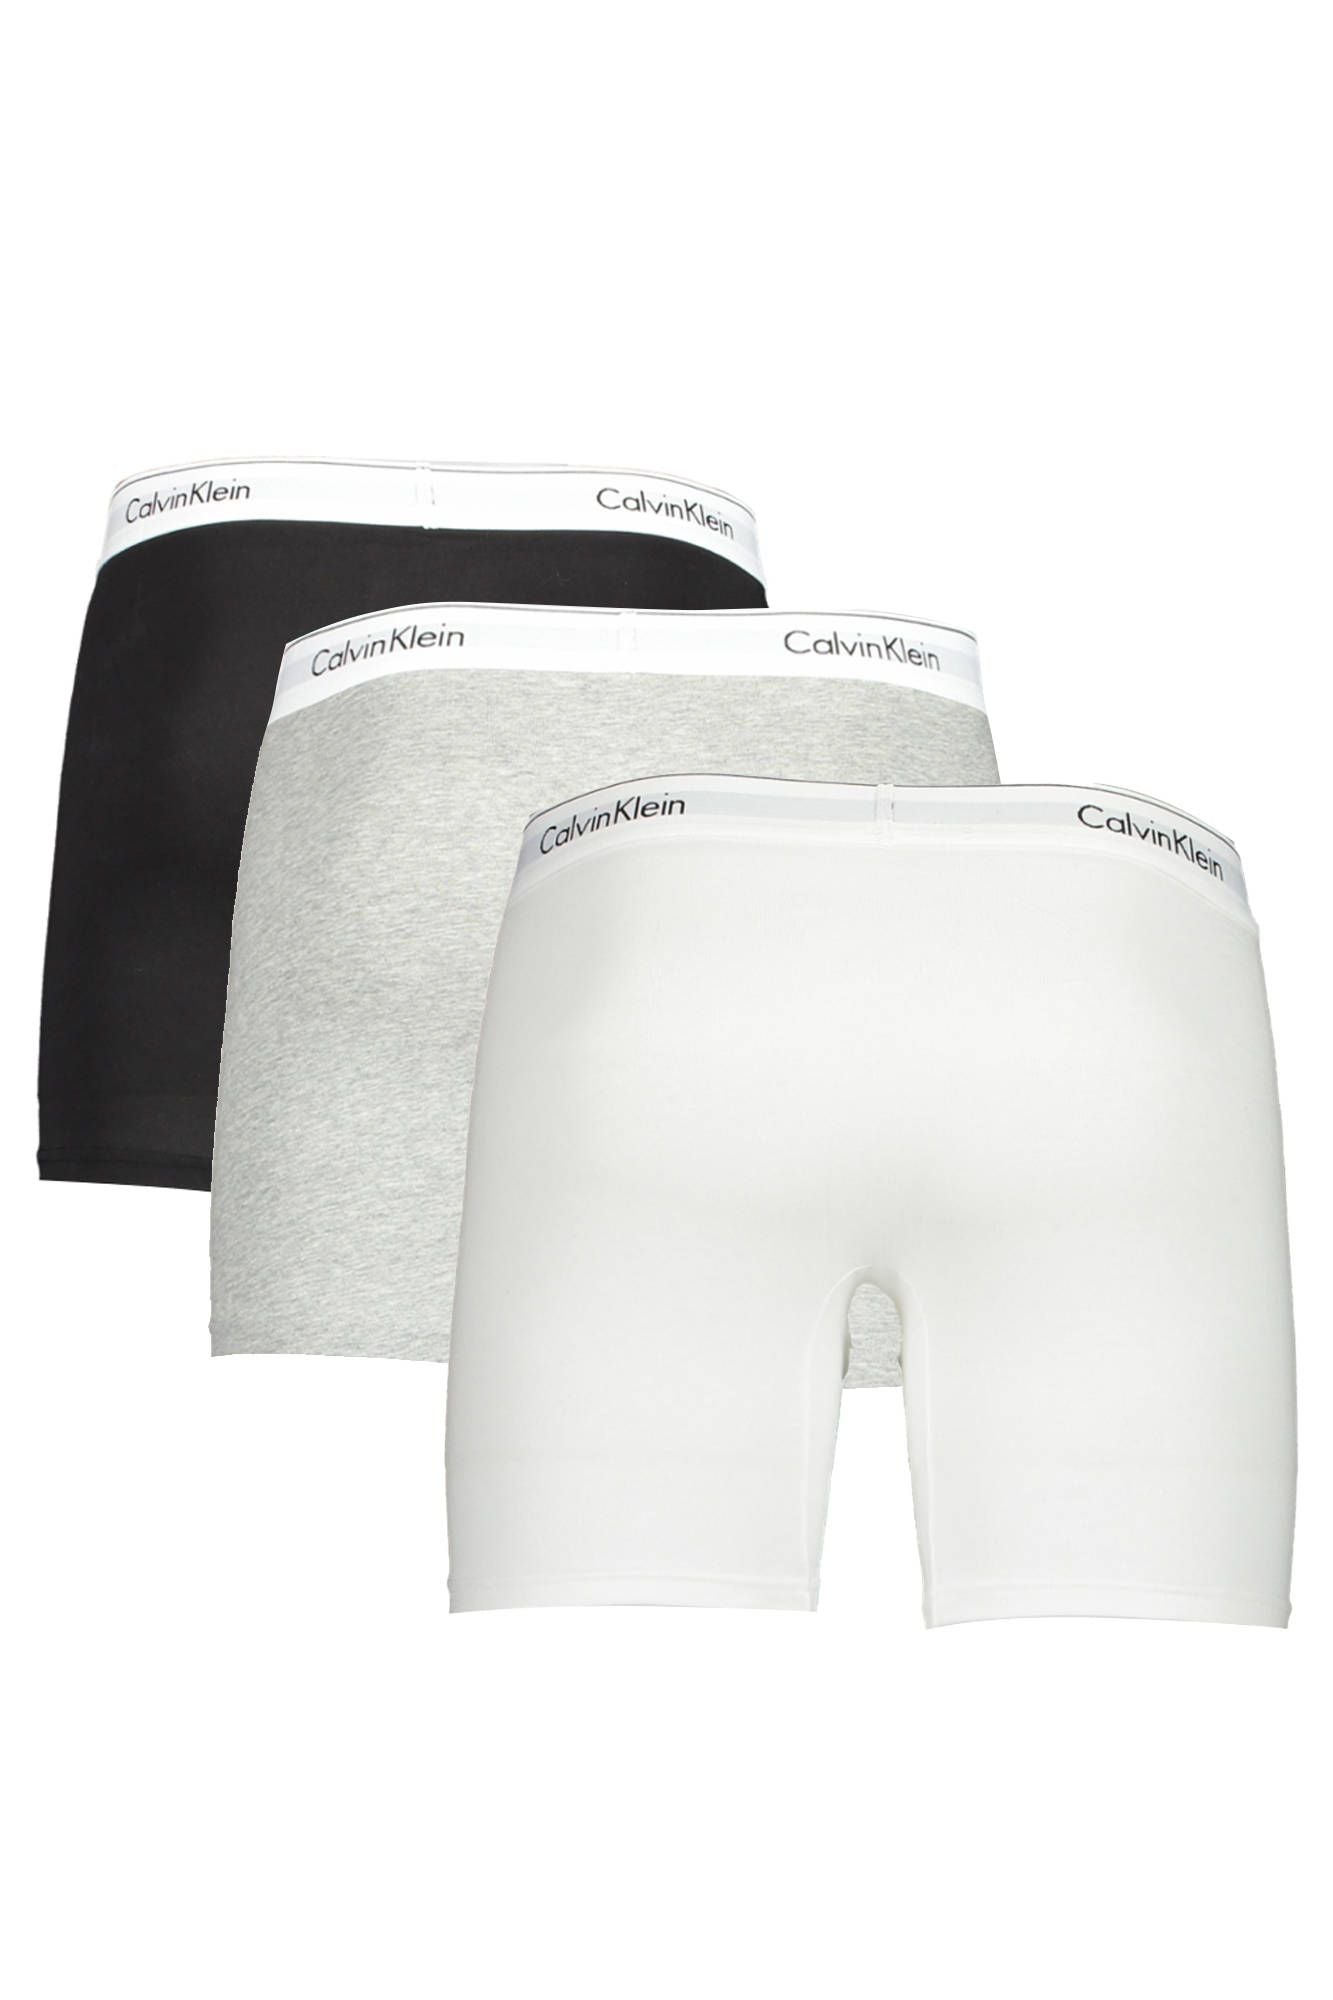 Calvin Klein Modern Stretch Cotton Boxer Briefs Triple Pack